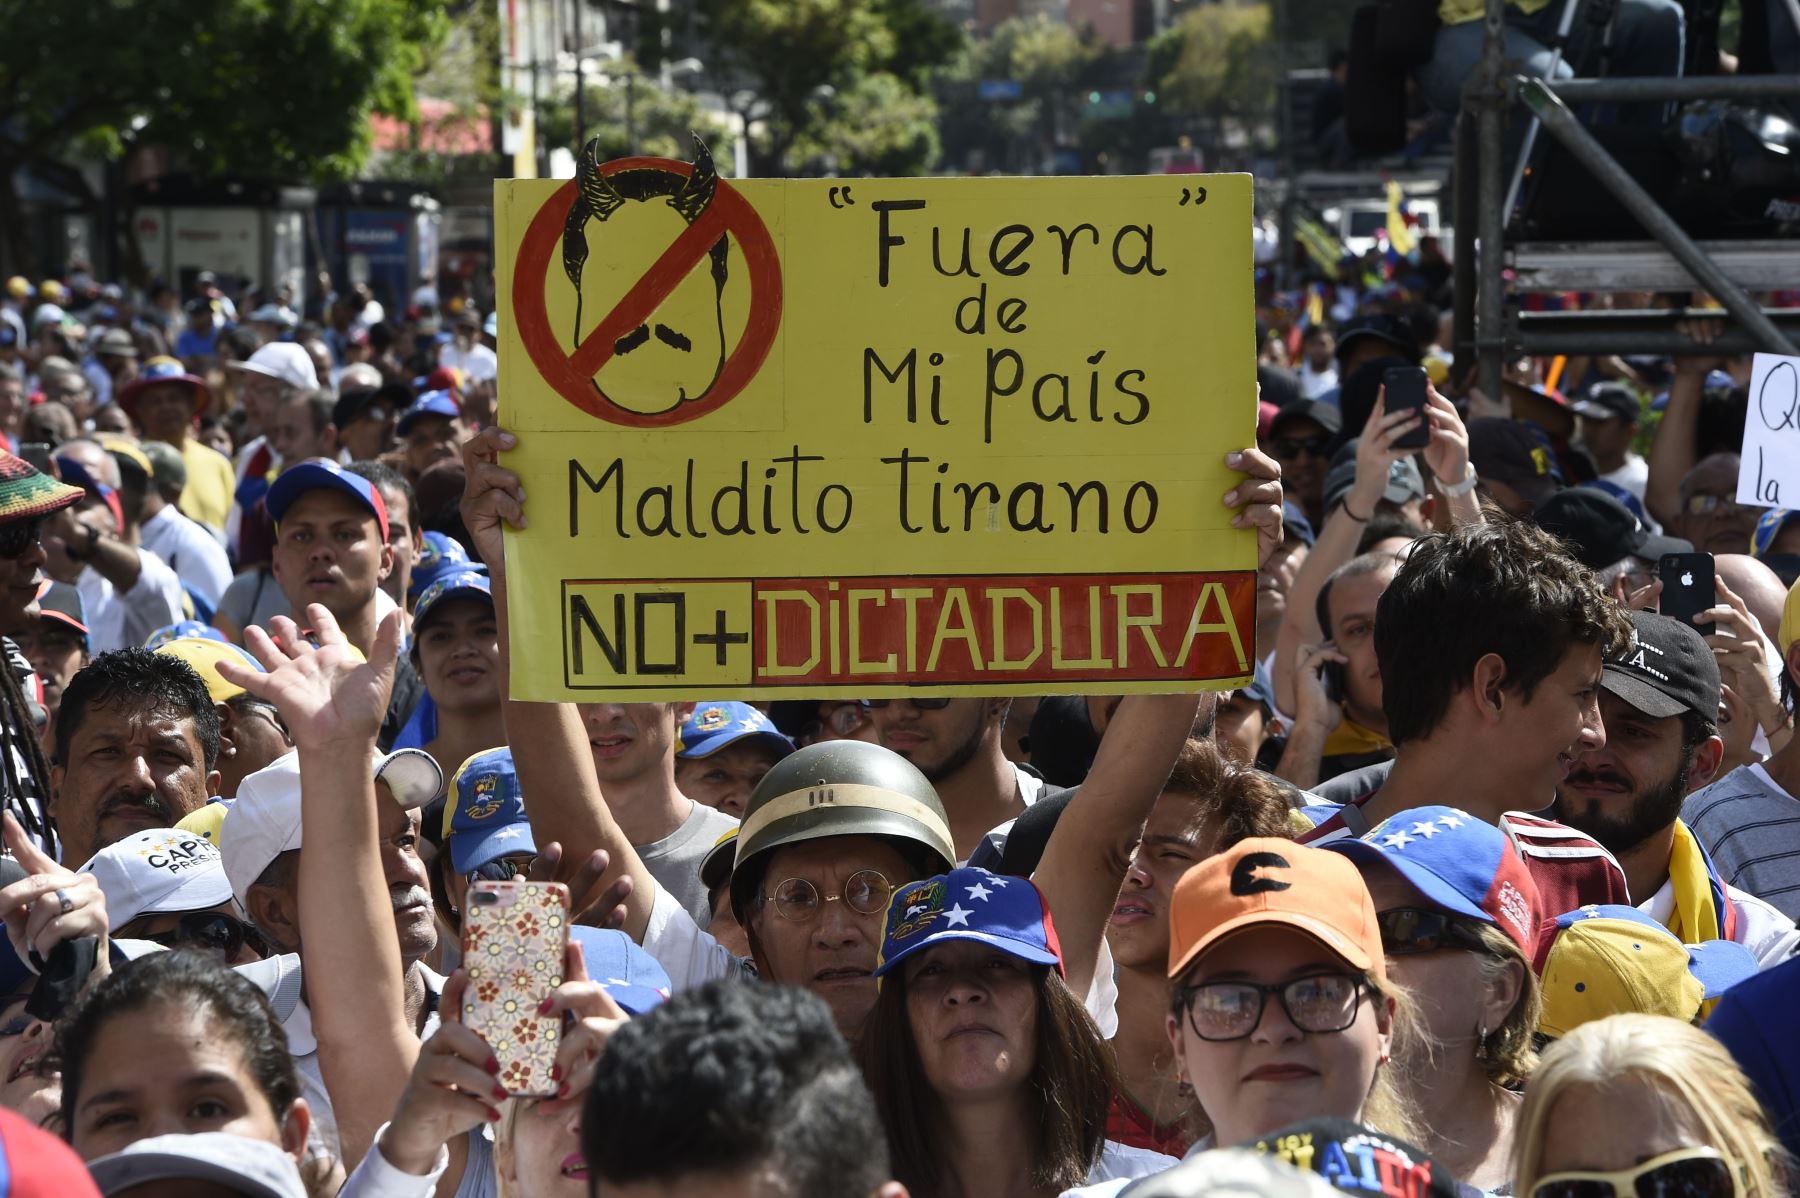 Partidarios del líder opositor venezolano y autodeclarado presidente Juan Guaido, muestra un cartel que dice "Salga de mi país, maldito tirano", "No más dictadura", refiriéndose al presidente Nicolás Maduro Foto: AFP